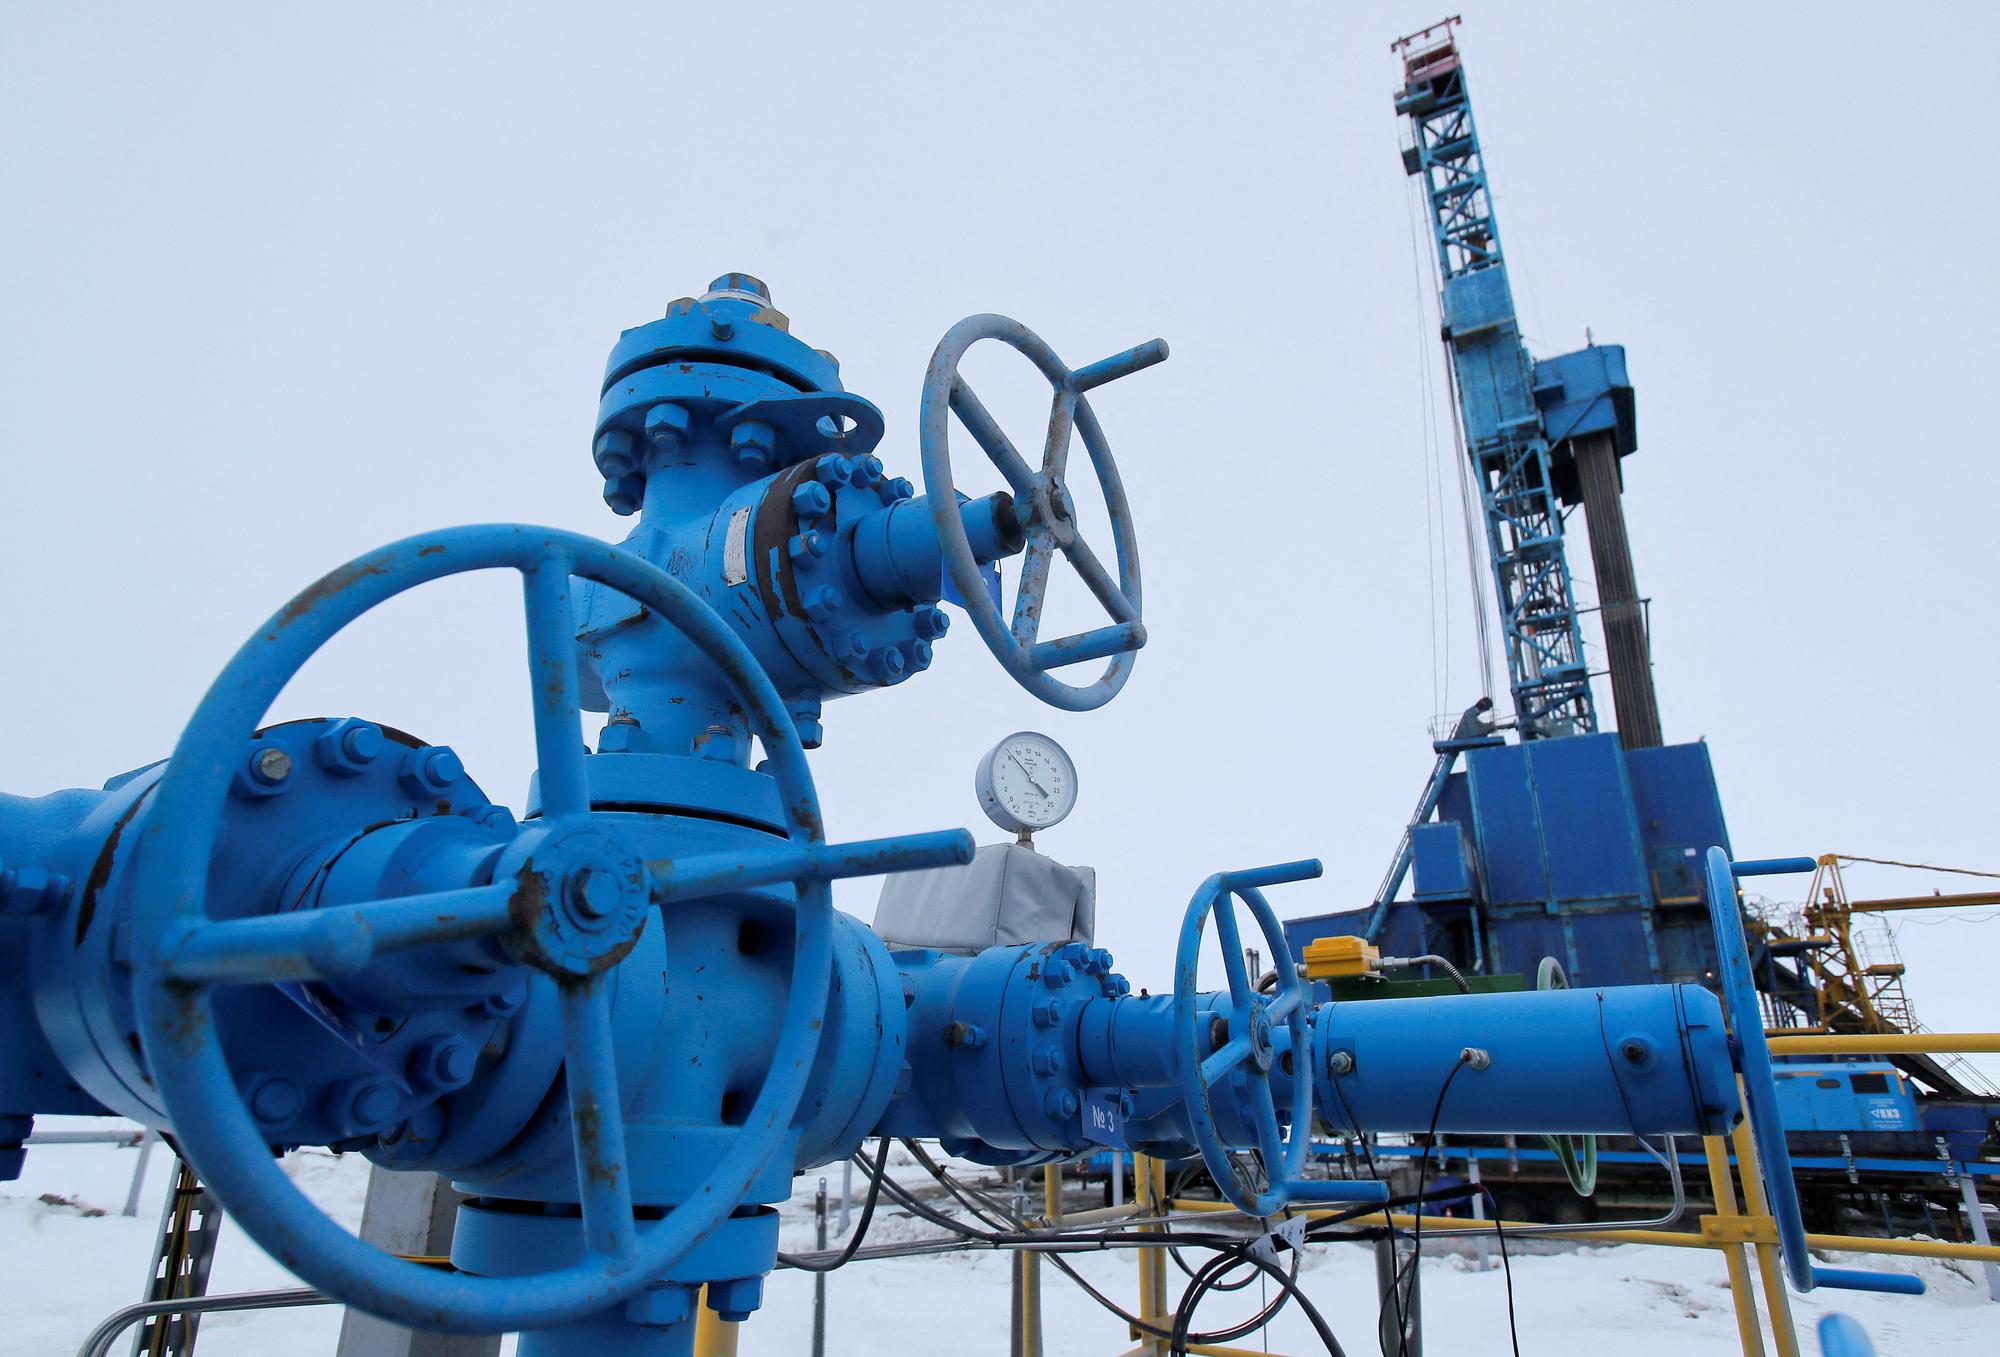 Des vannes près d'une plate-forme de forage de gaz exploitée par la société Gazprom dans l'Arctique russe. [Reuters - Maxim Shemetov]